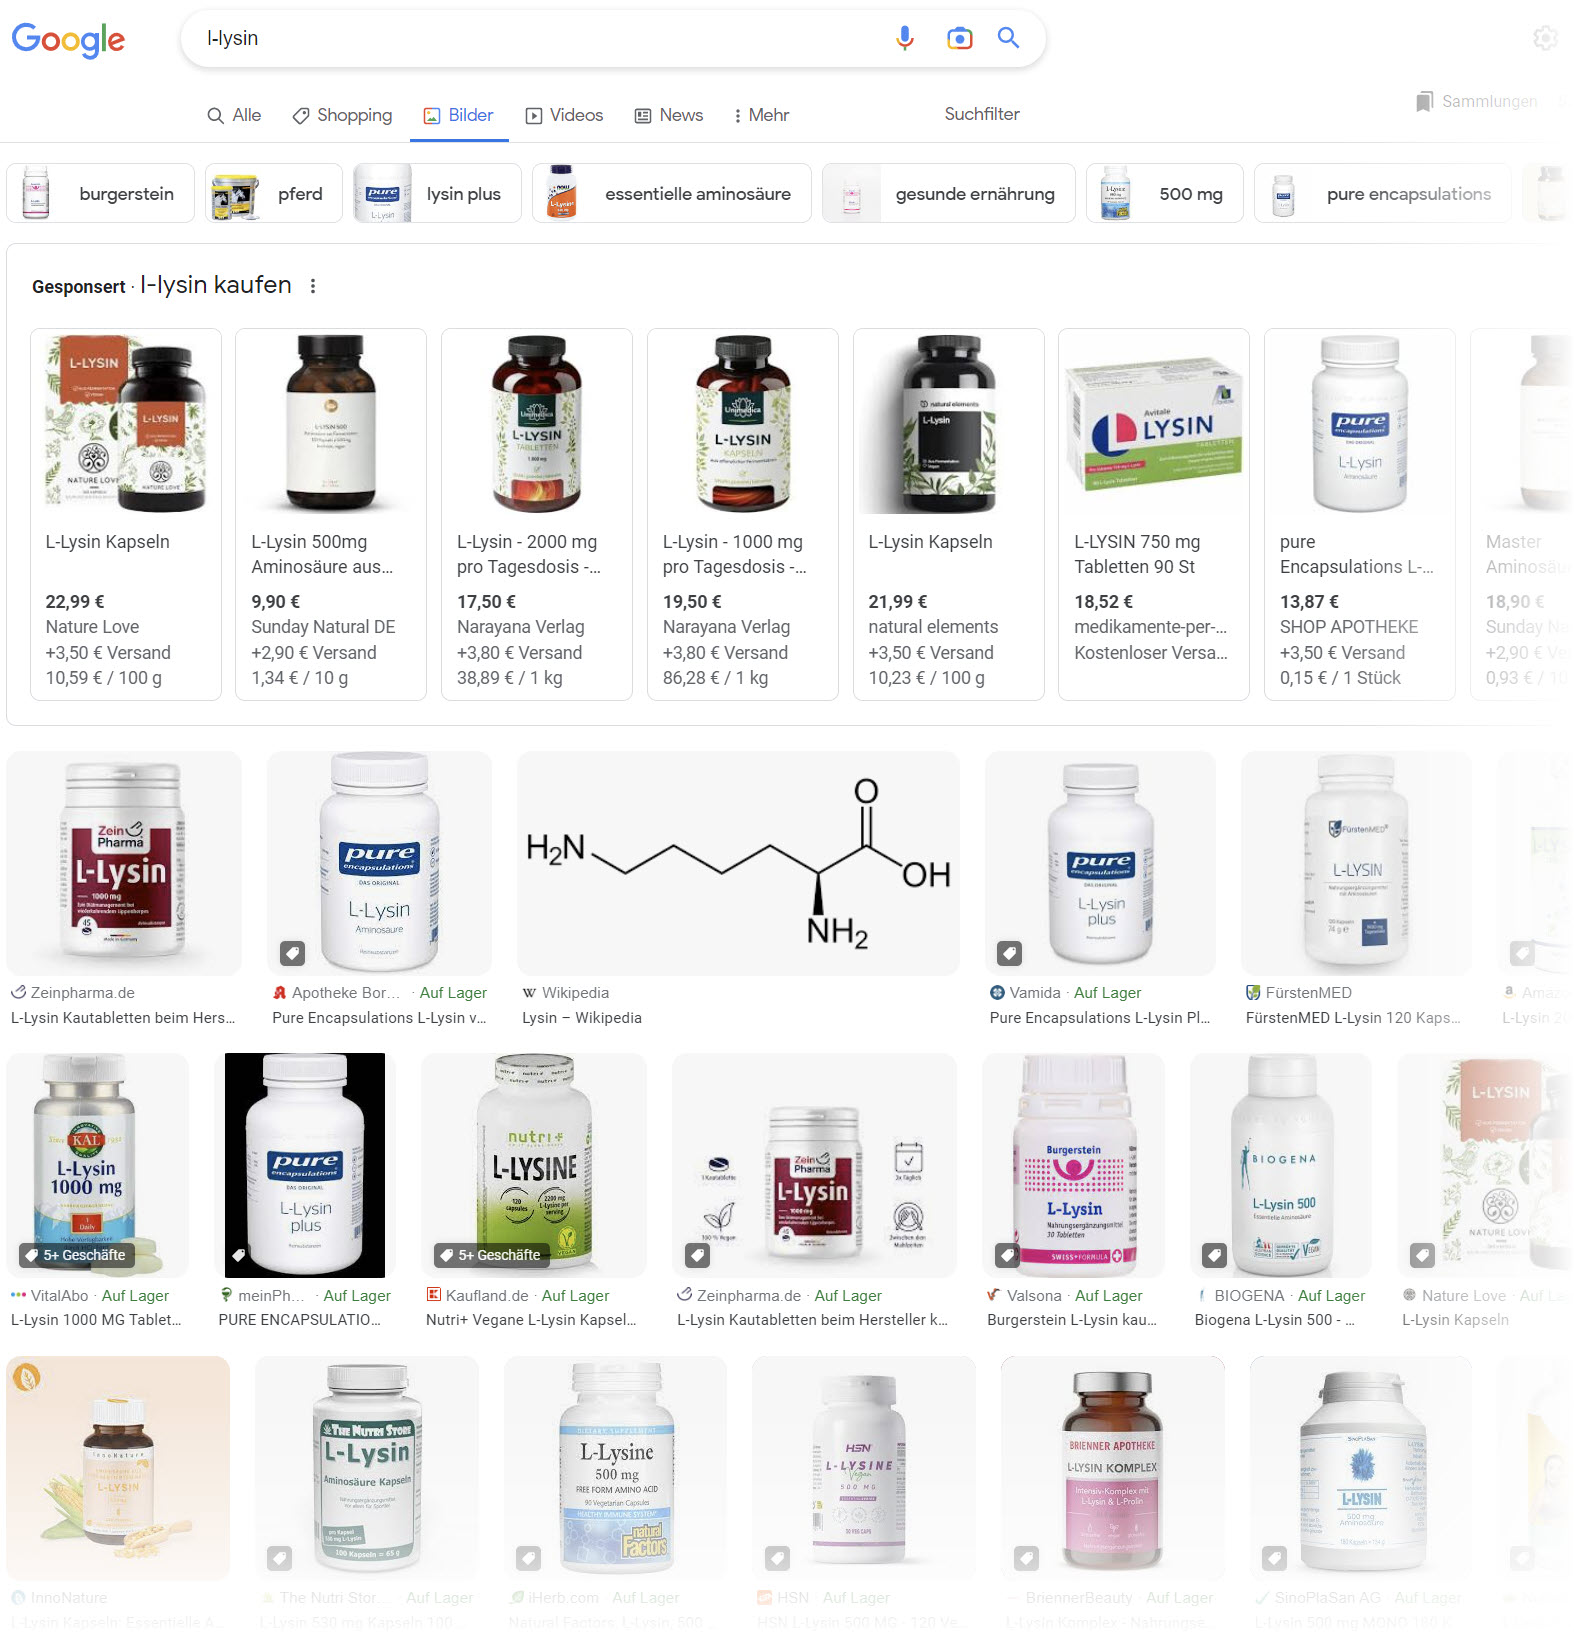 L-Lysin ist als Nahrungsergänzungsmittel sehr beliebt - eine Google-Bildersuche zeigt, wie viele Anbieter und Produkte es gibt. Für Menschen, aber auch für Tiere wie z.B. Pferde. (Screenshot Google Bildersuche 12.04.2023)